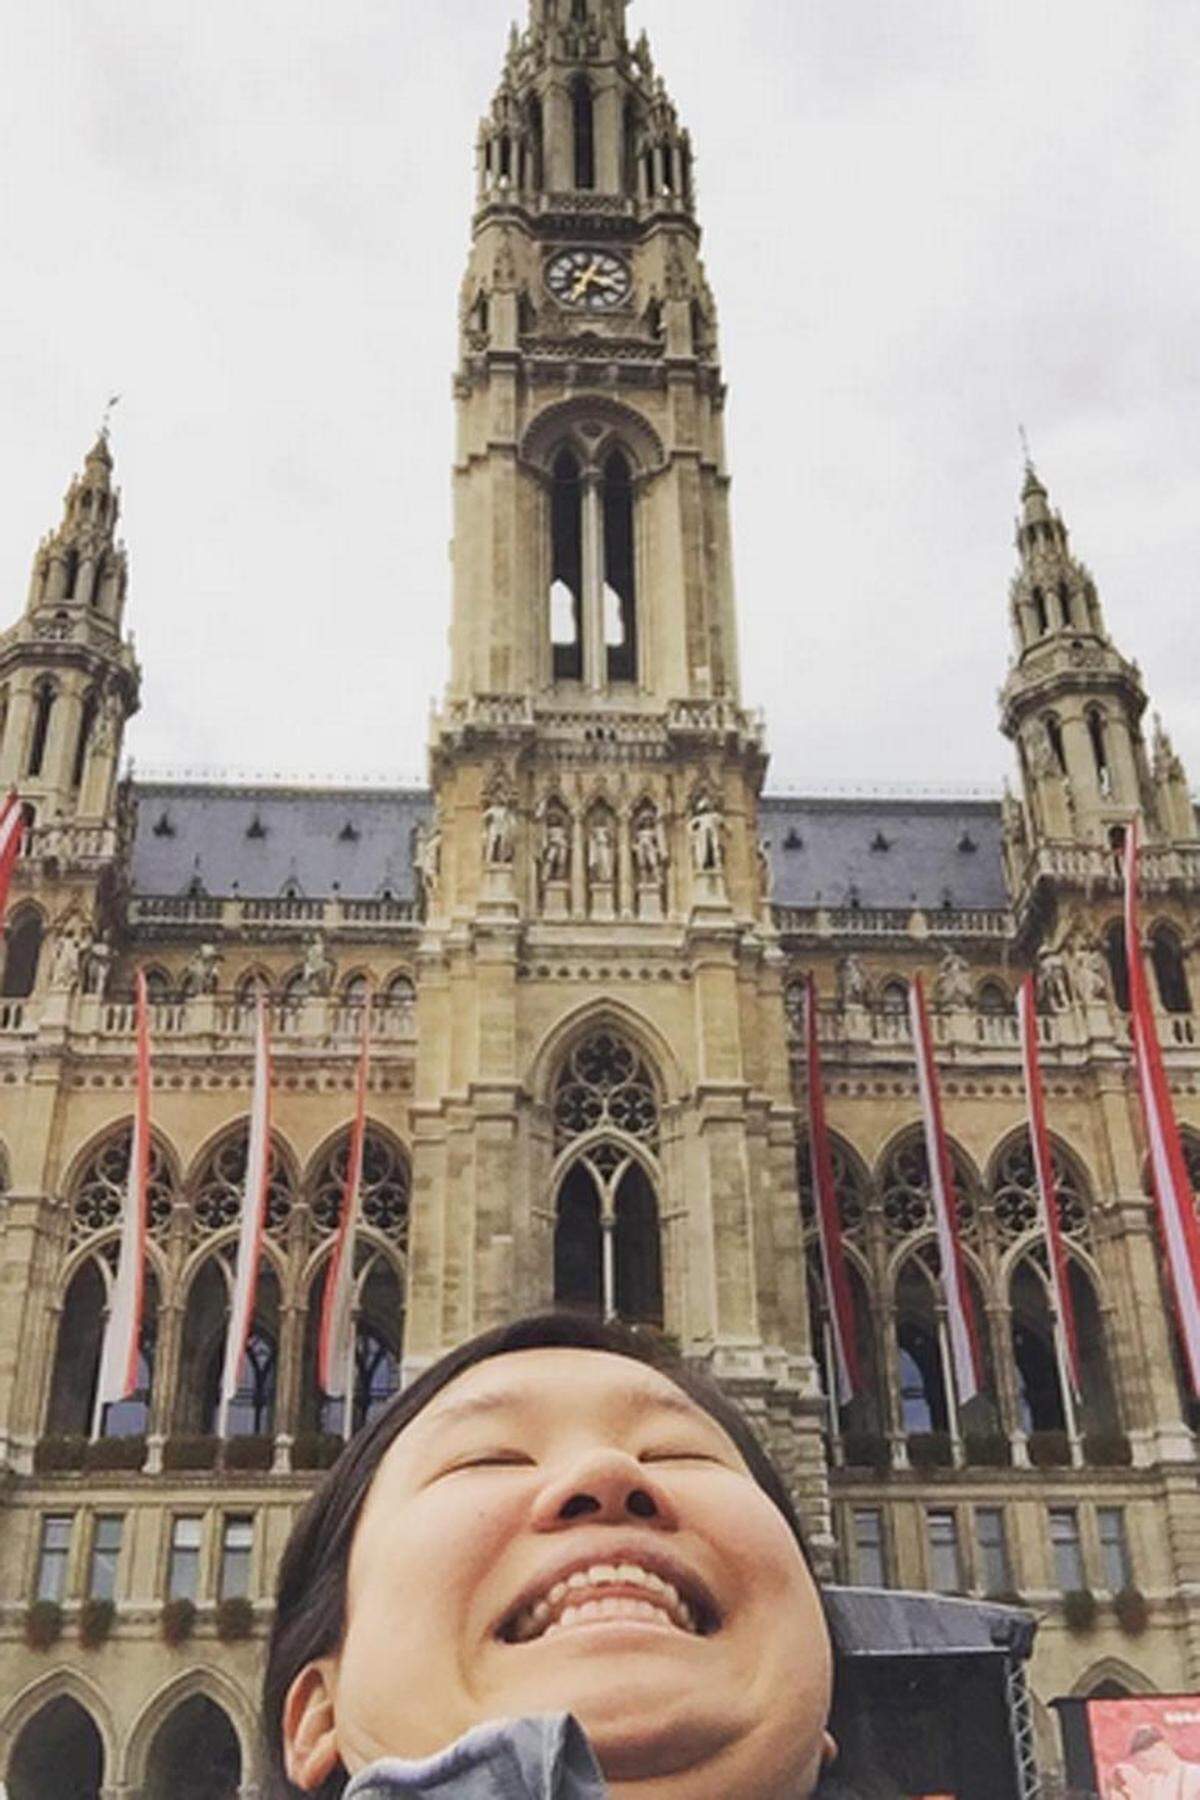 Michelle Liu "chinnt" auf der ganzen Welt. Auf ihrem Instagram-Account dokumentiert sie ihre Reise um den Globus und versorgt ihre Follower mit Doppelkinn-Fotos von bekannten Plätzen - auch vom Wiener Rathaus.